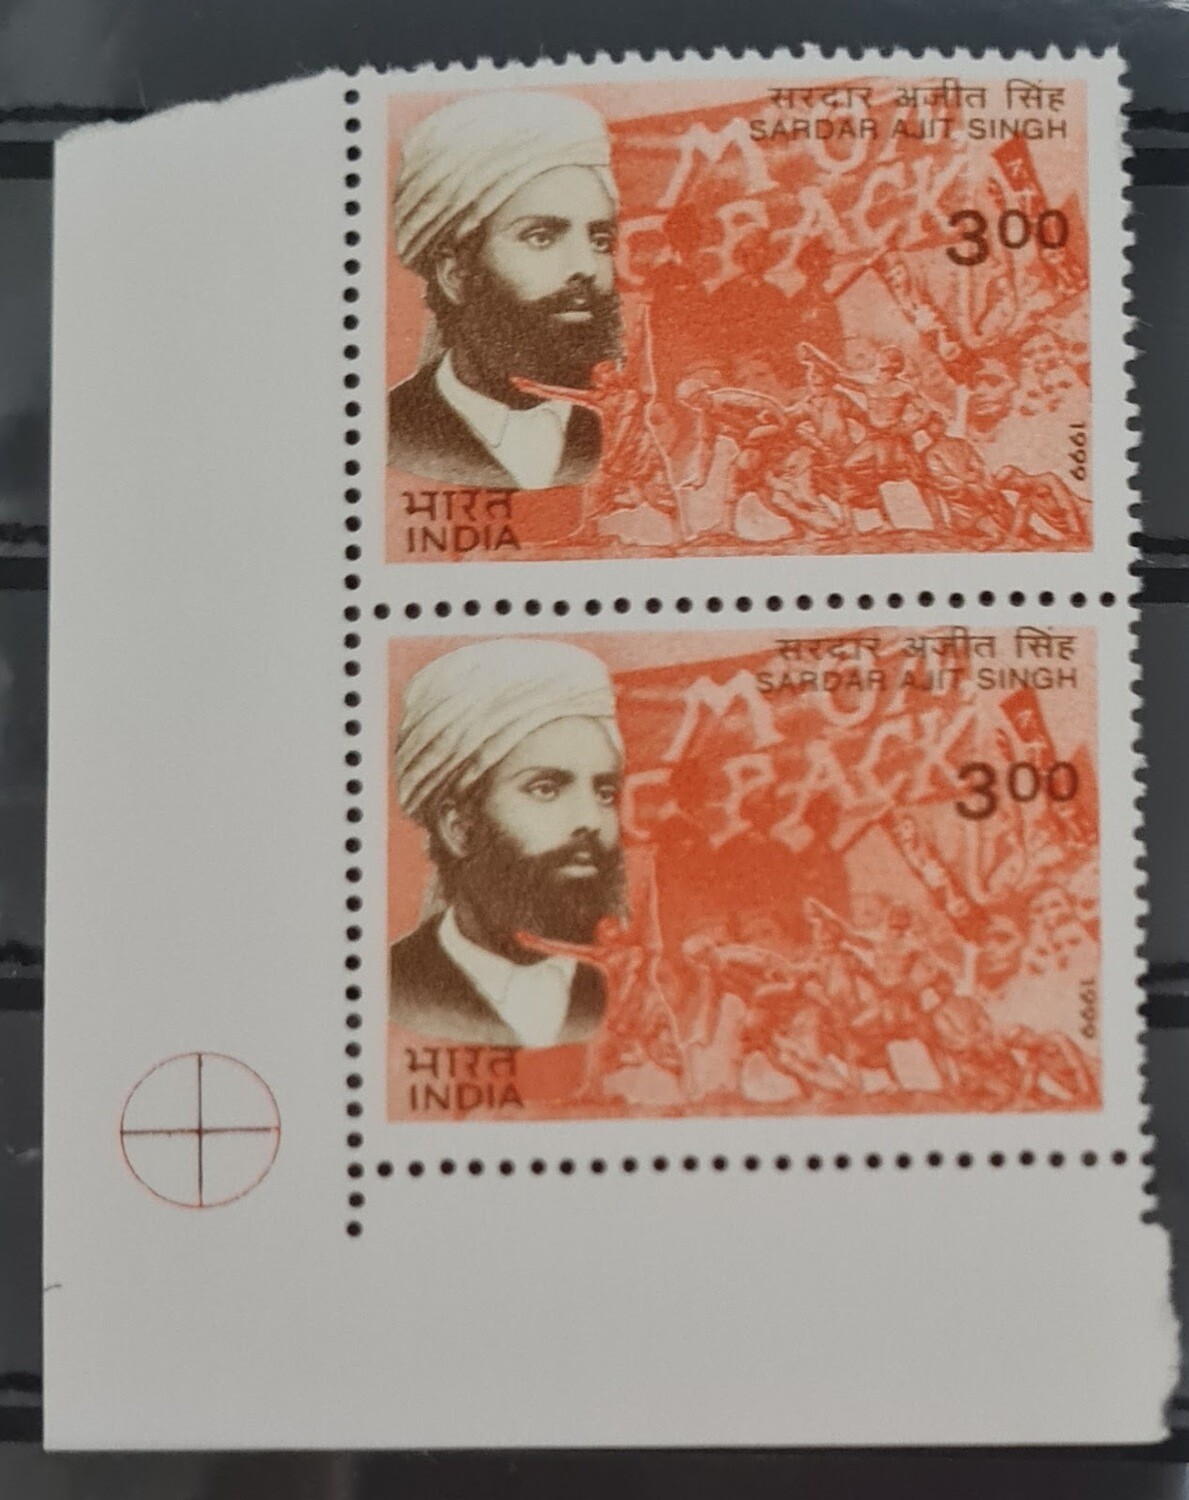 INDIA-SARDAR AJITH SINGH 1999 MNH pair of stamps